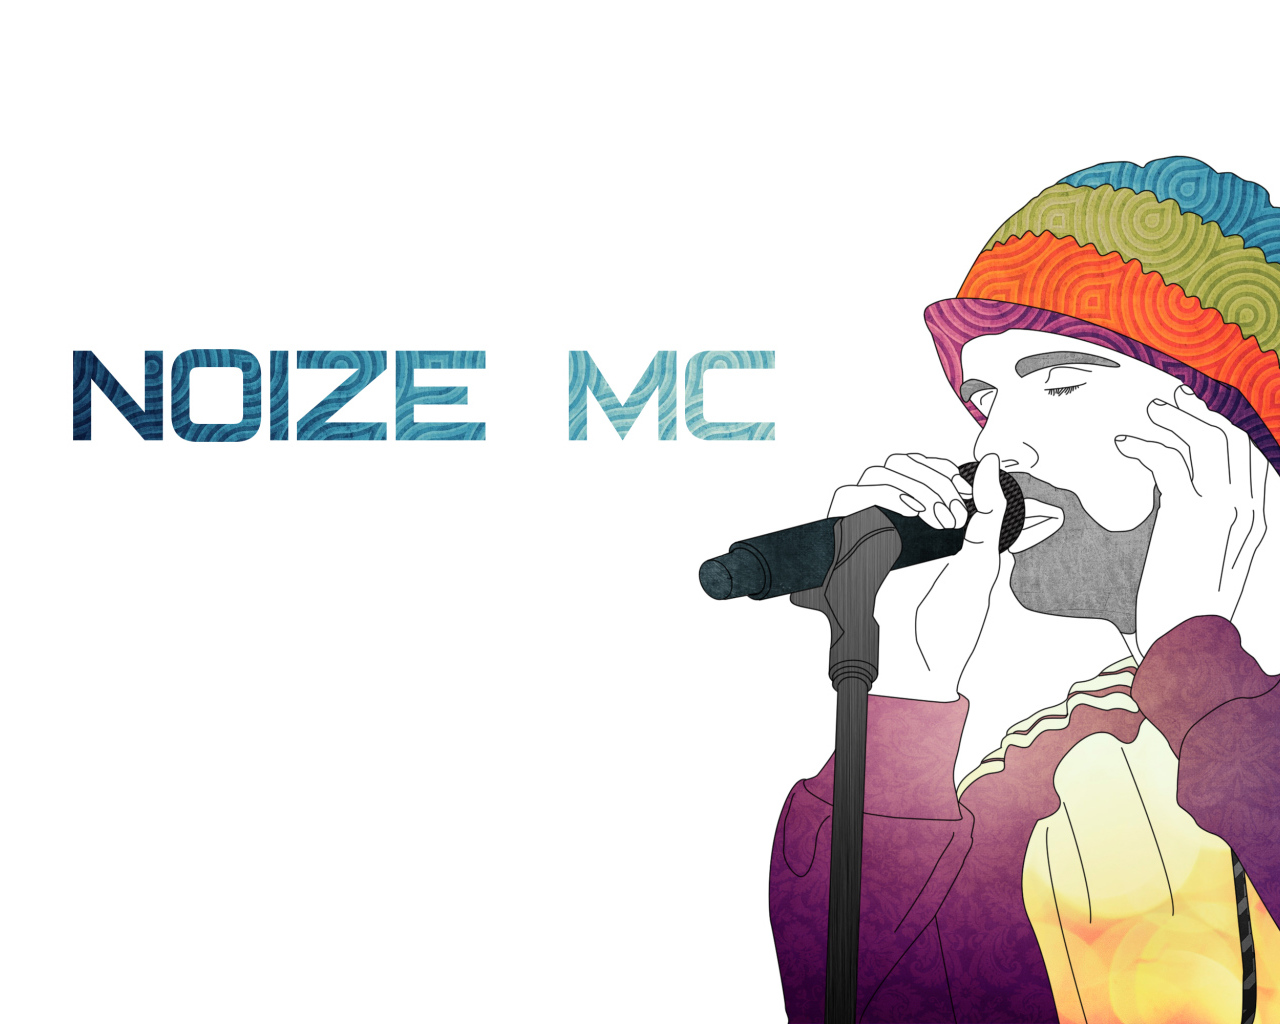 Noize MC потрясающий DJ